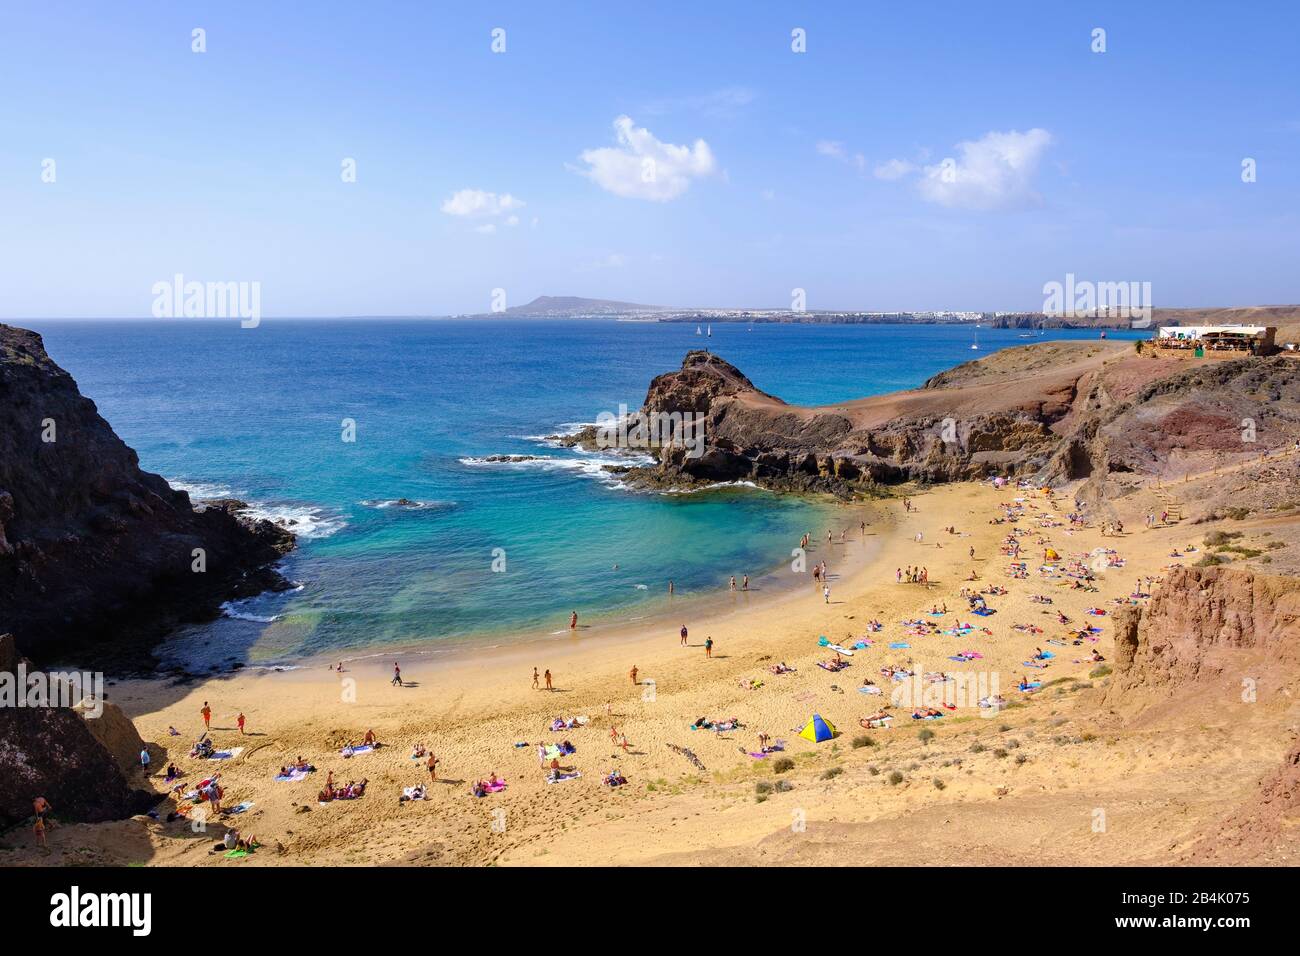 Playa De Papagayo Papagayo Beaches At Playa Blanca Lanzarote Canary Islands Spain Stock